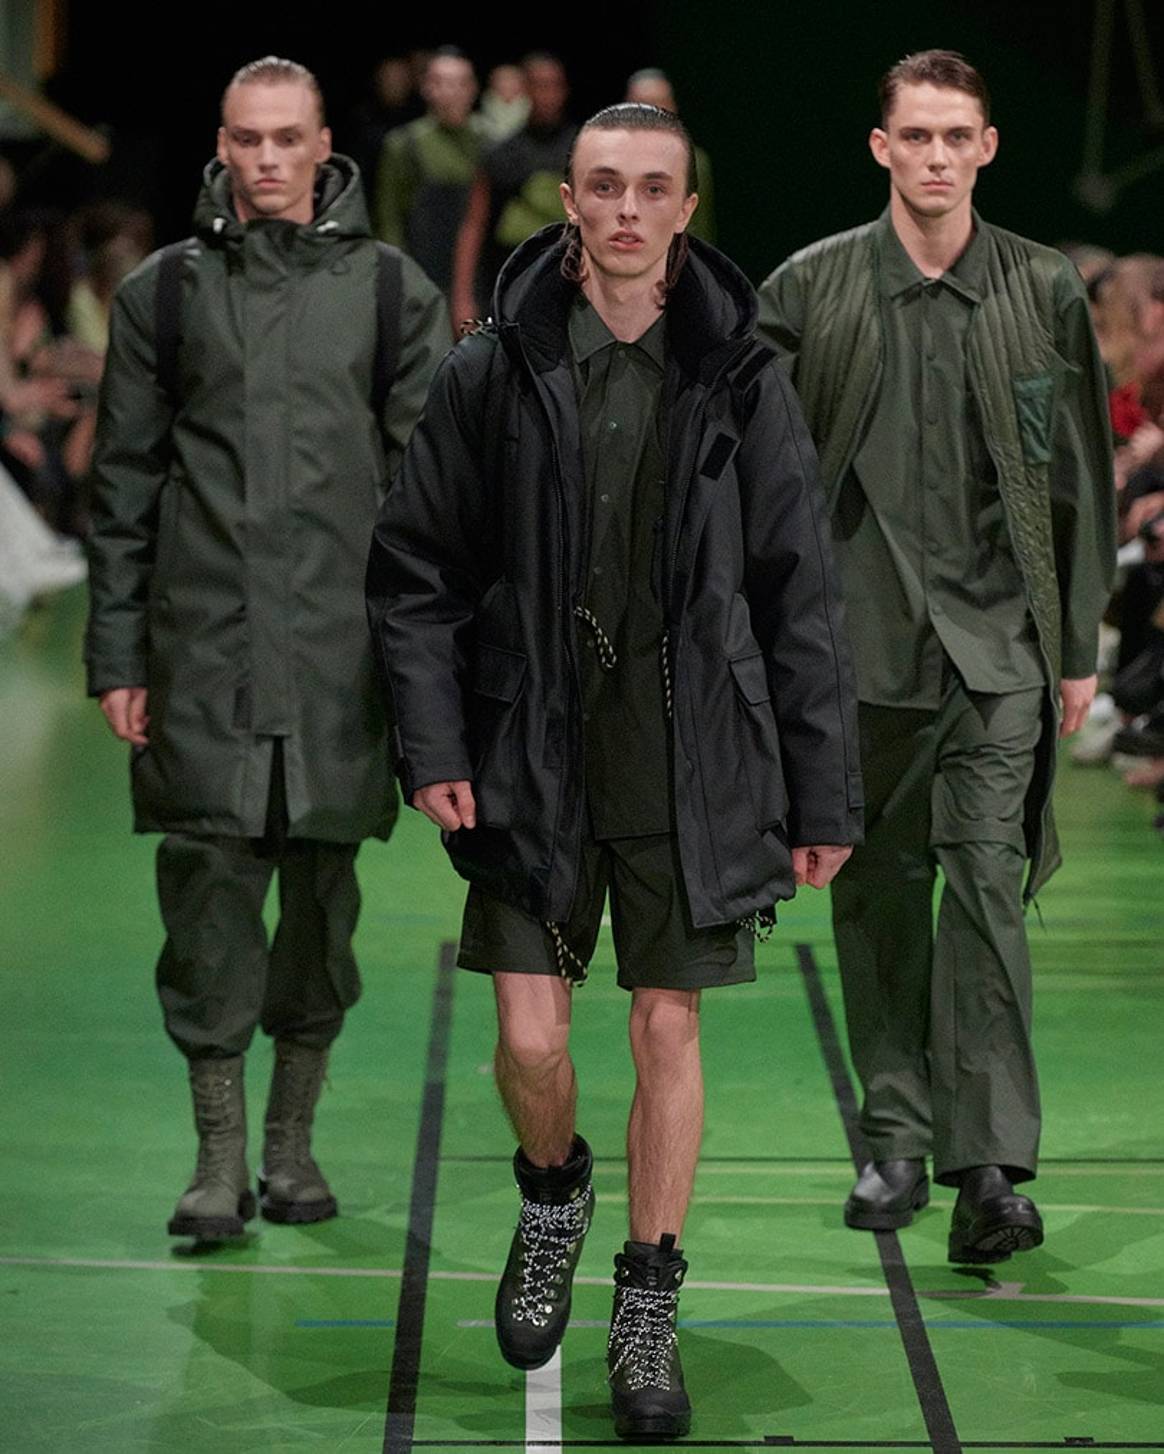 Copenhagen Fashion Week AW20: Rains presents first catwalk show